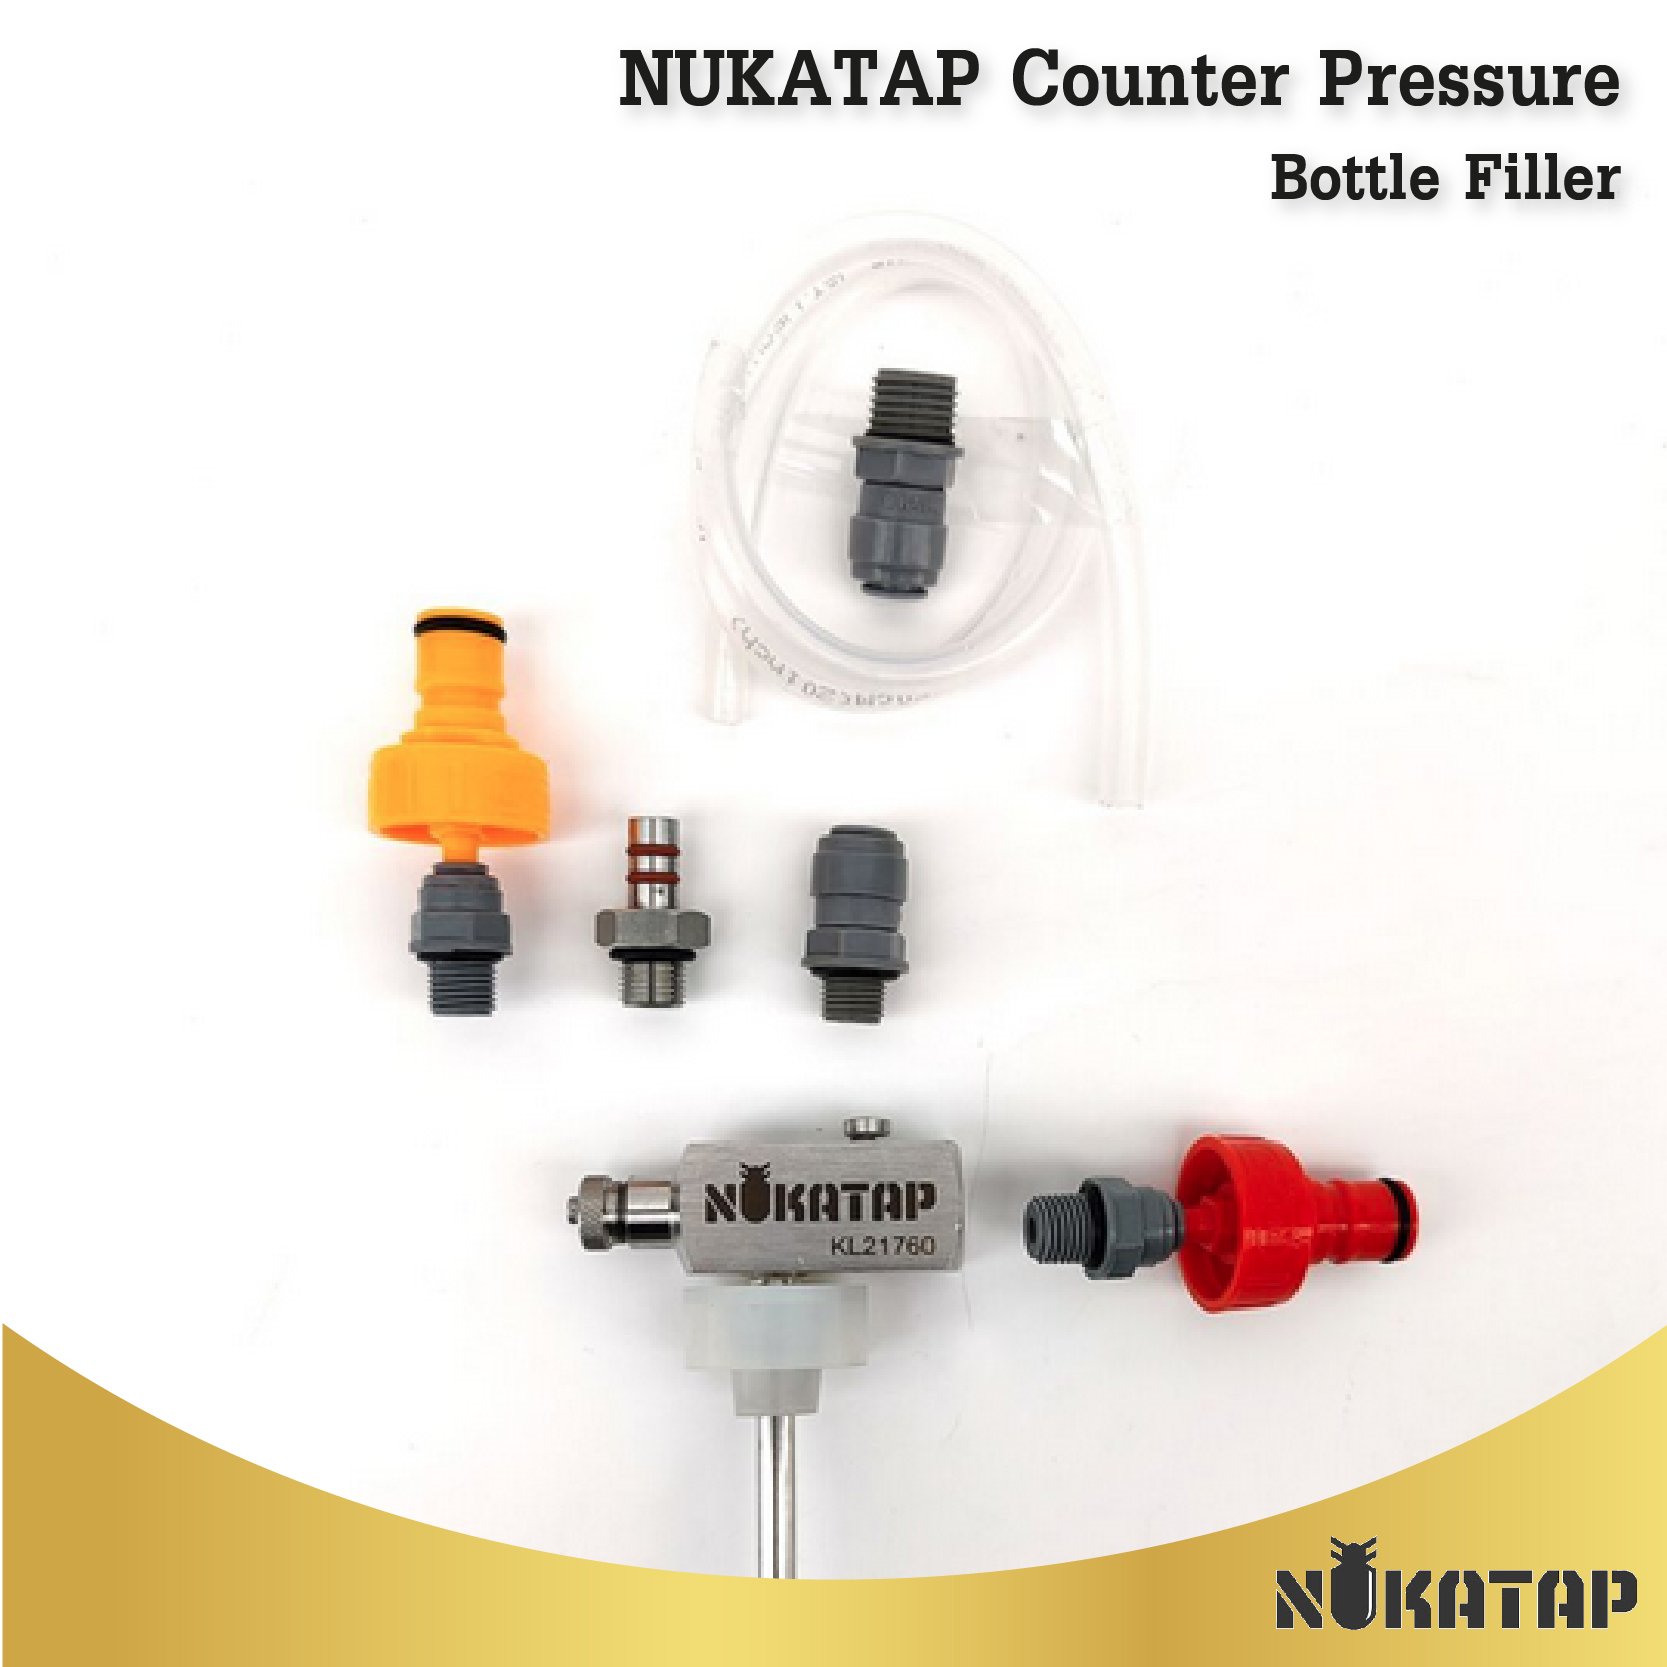 NUKATAP Counter Pressure Bottle Filler